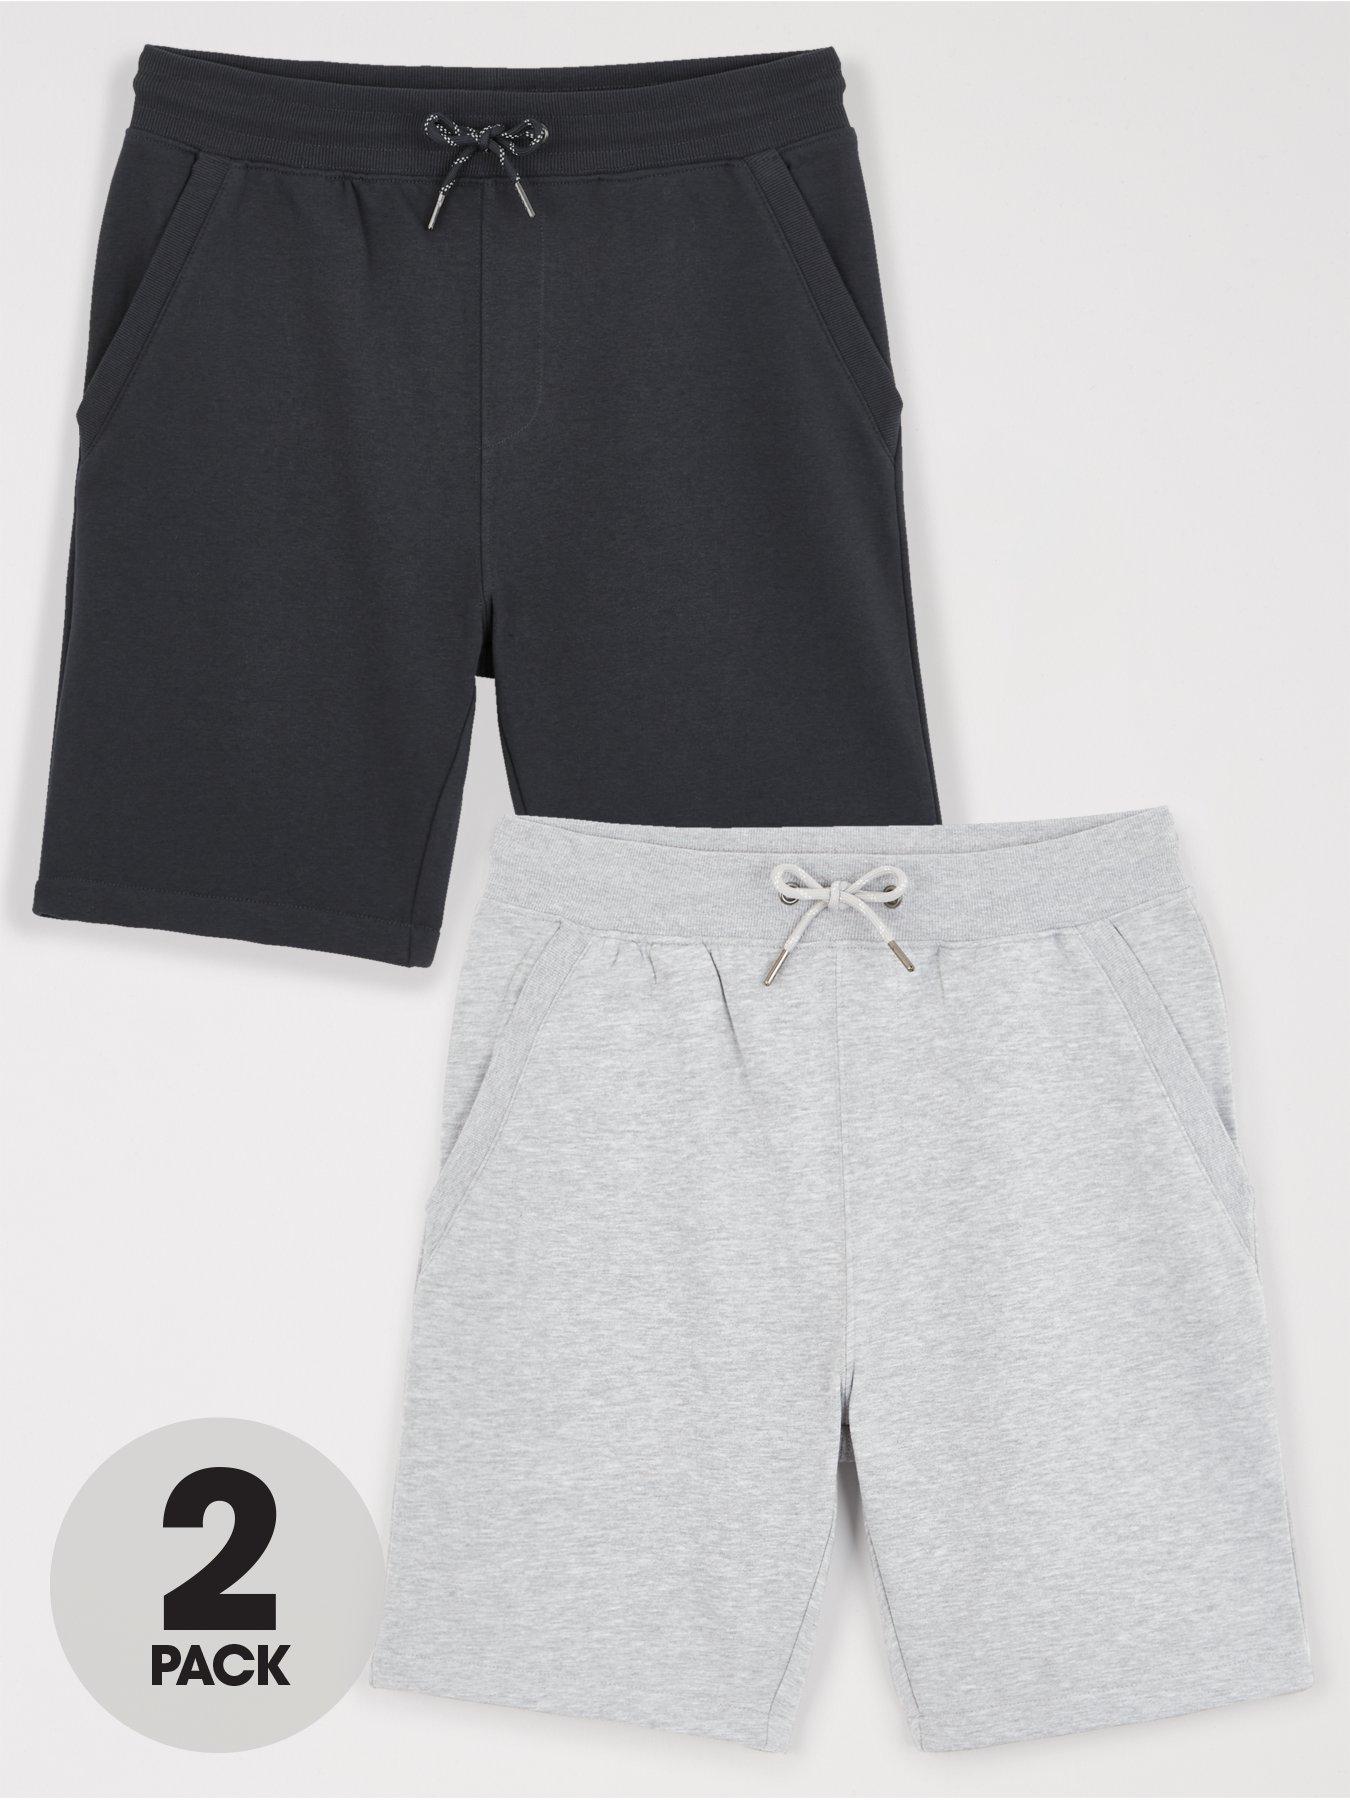 Shorts 2 Pack Essentials Jog Short - Black & Grey